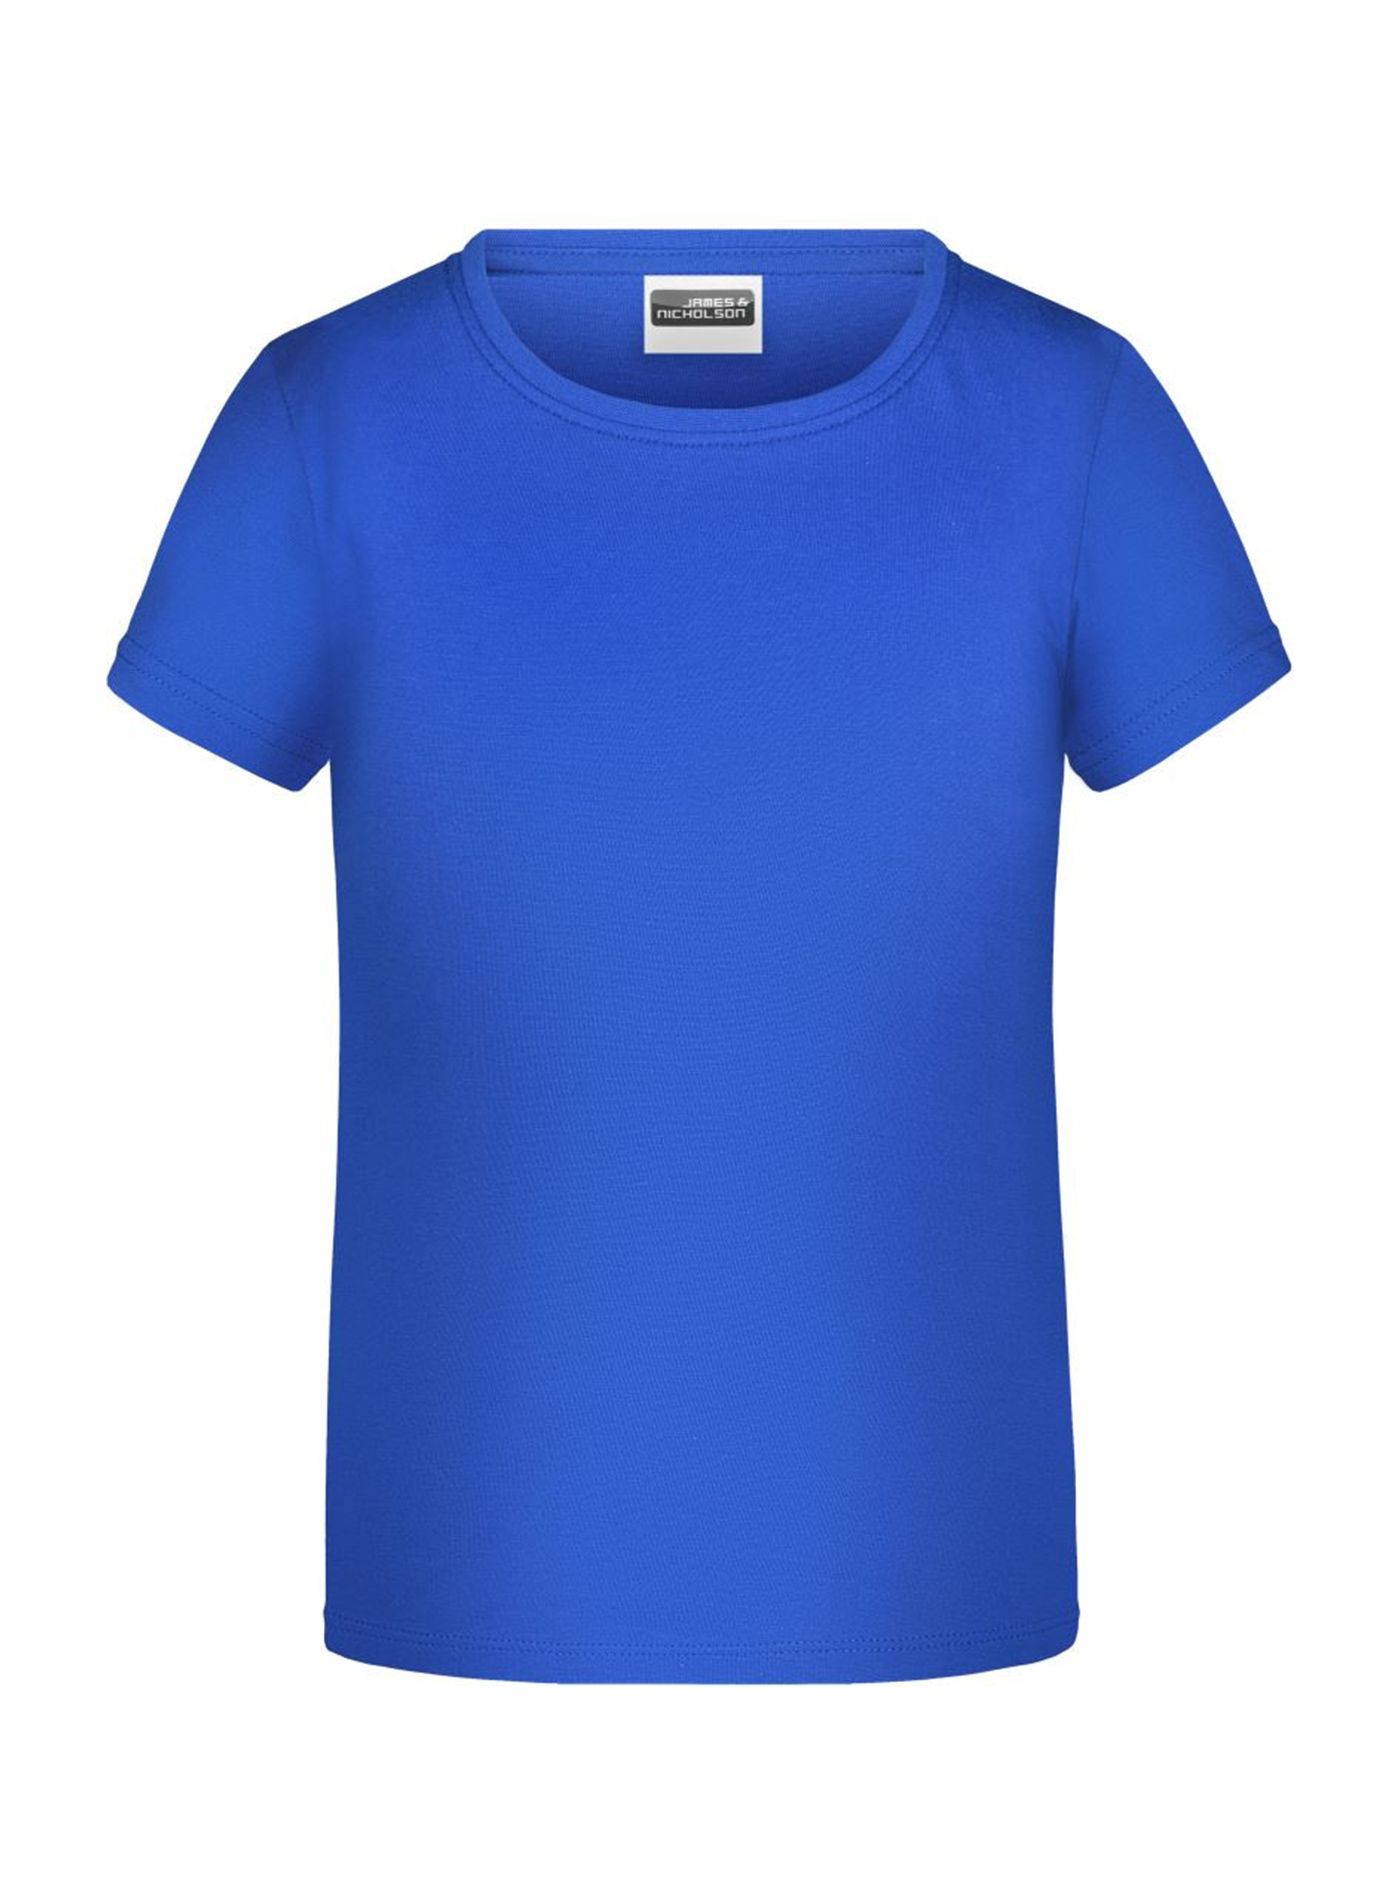 Dívčí tričko James & Nicholson - Královská modrá L